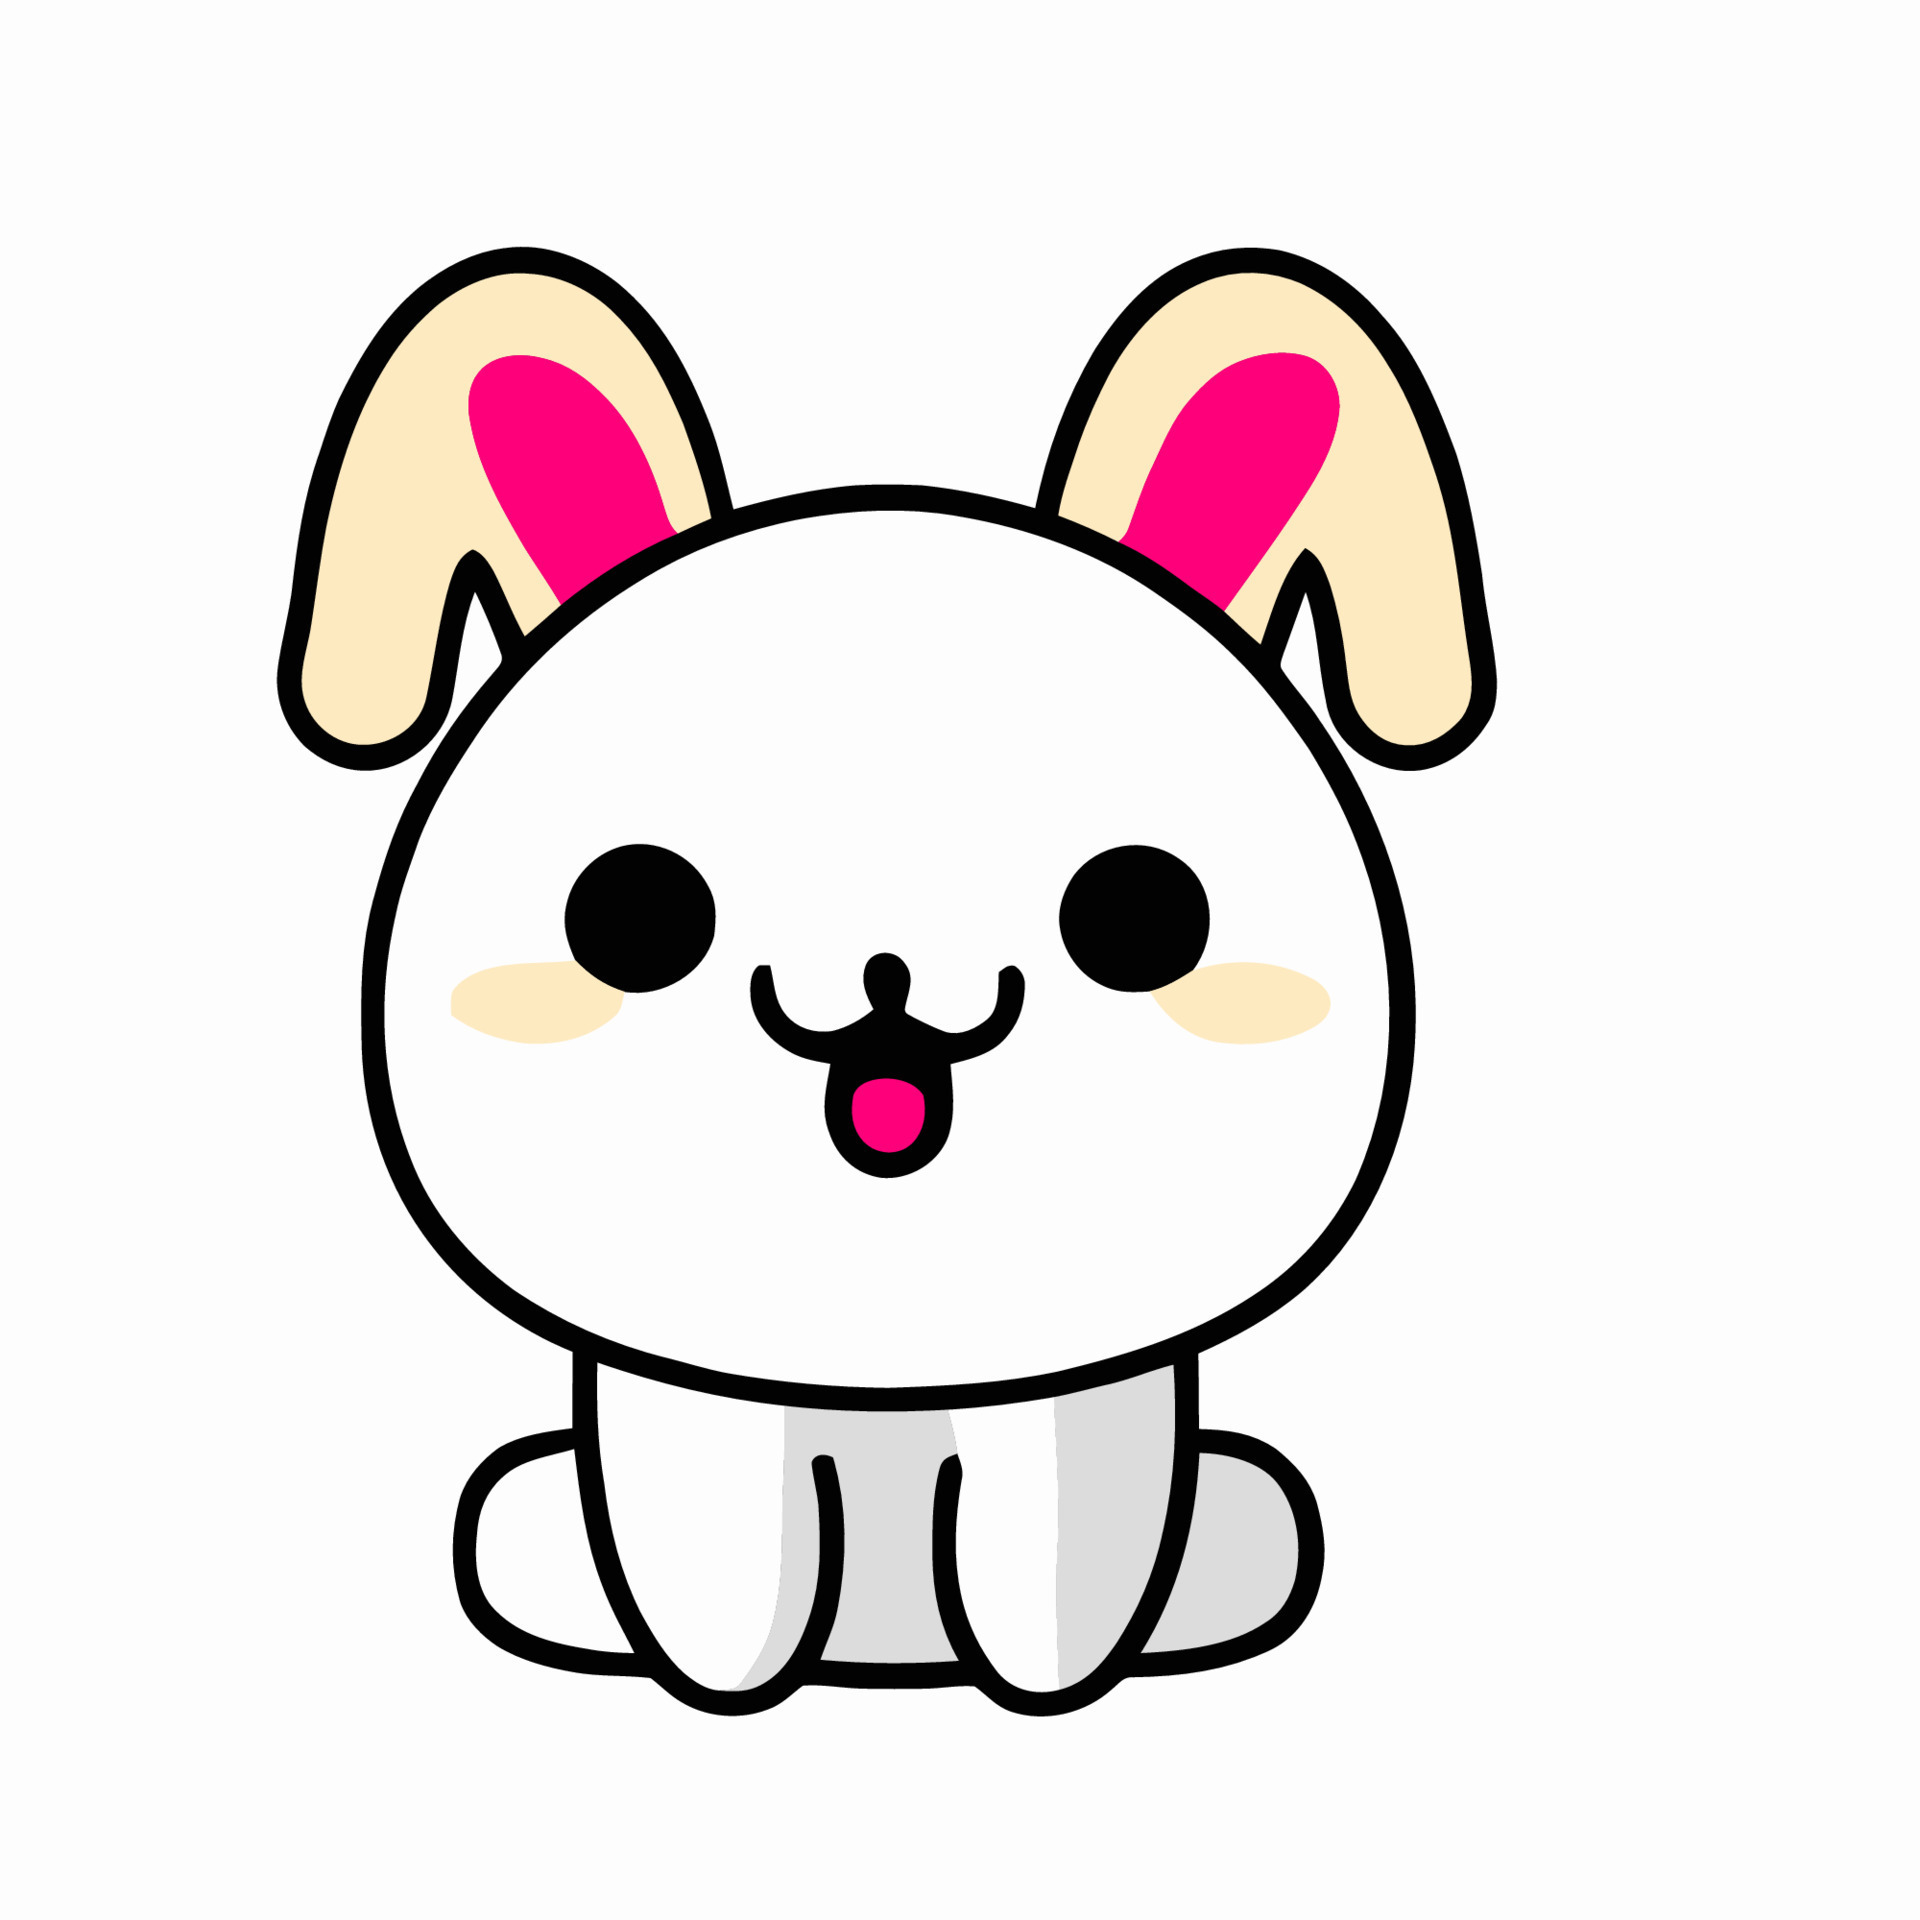 ilustração de coelho fofo coelho kawaii chibi estilo de desenho vetorial  coelho coelhinho dos desenhos animados 17047831 Vetor no Vecteezy